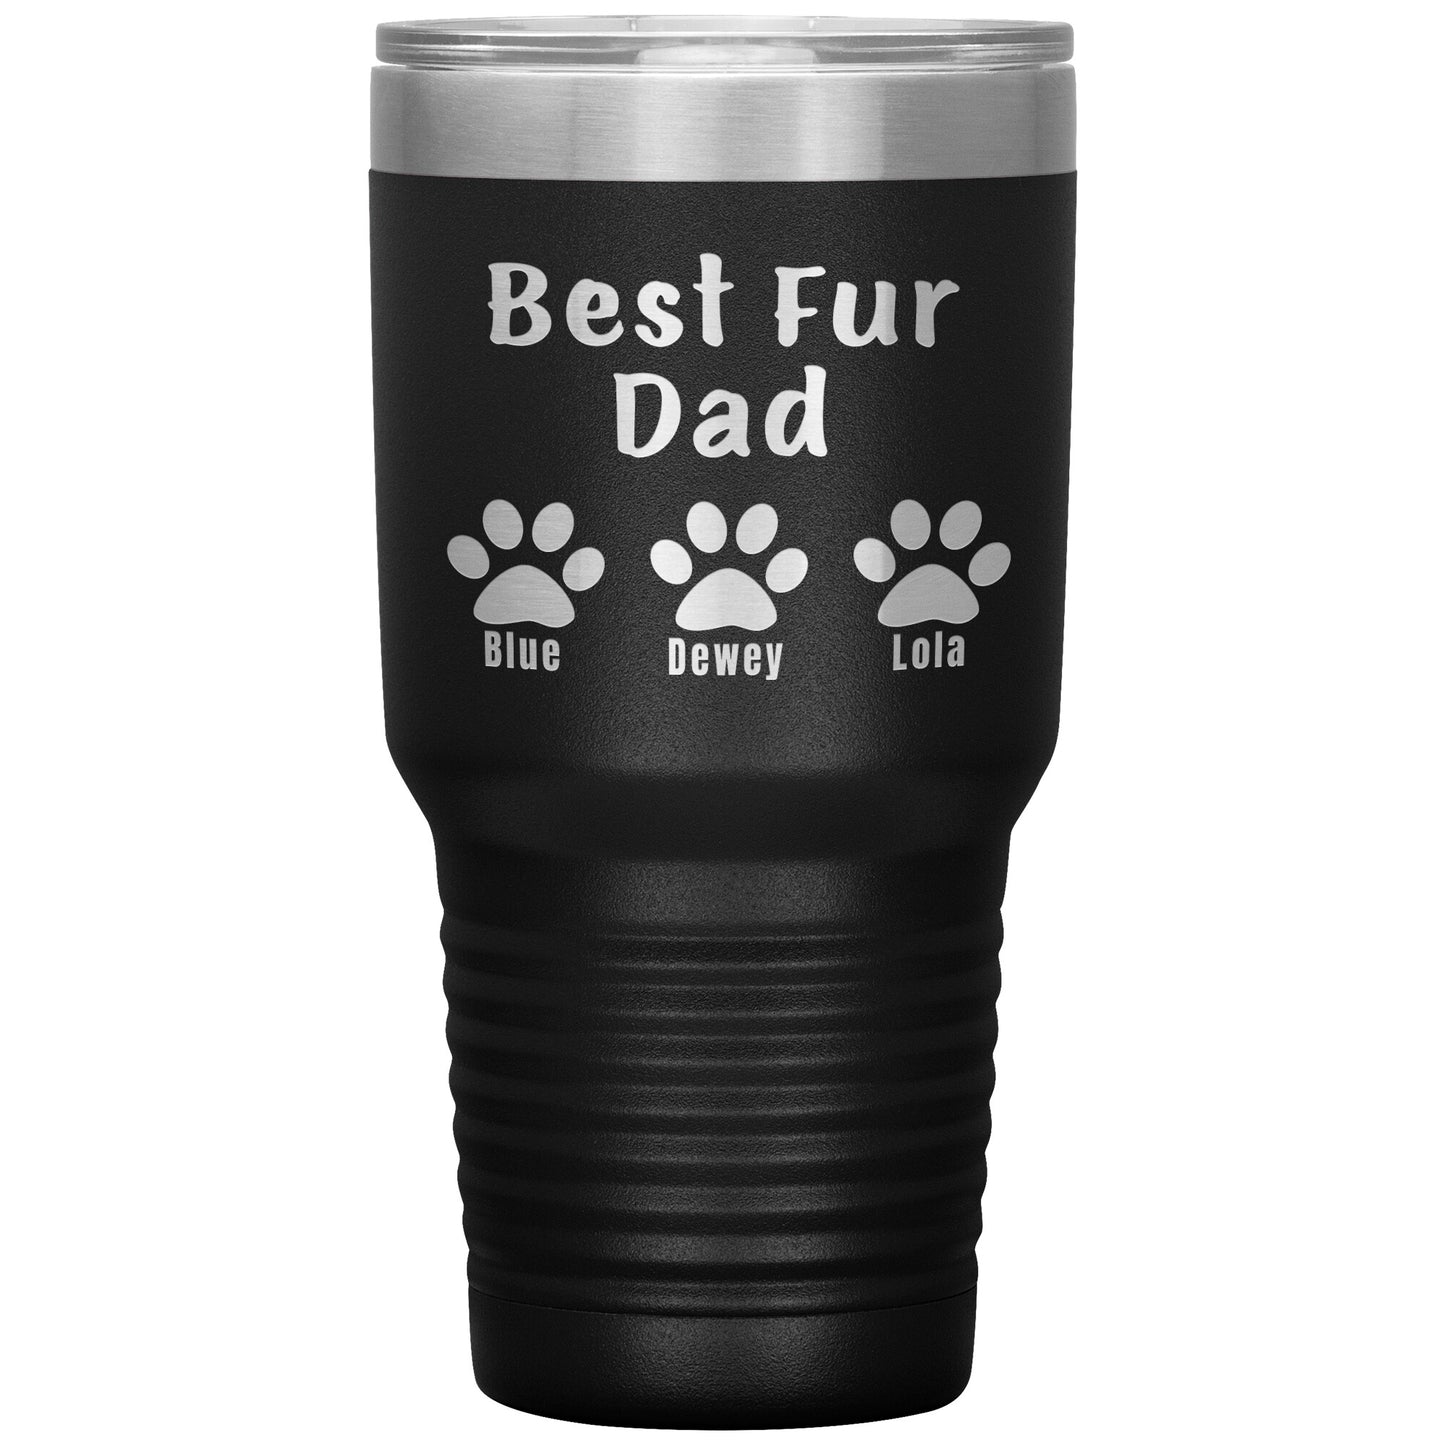 Best Fur Dad Tumbler